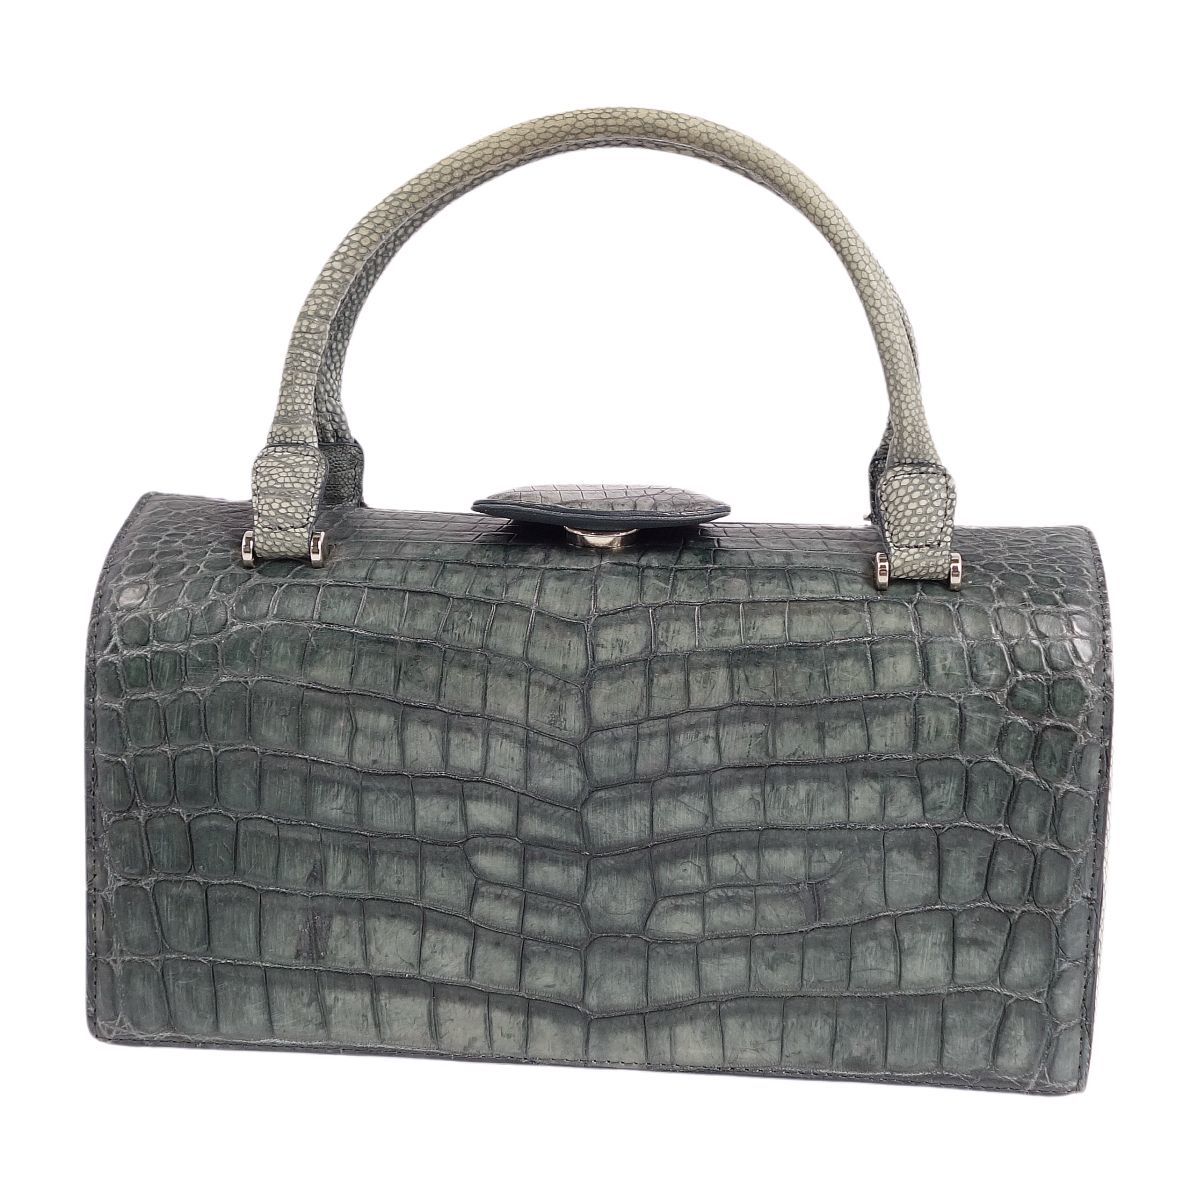  прекрасный товар крокодил CROCODILE JRA сумка ручная сумочка коврик черный kowani кожа портфель женский серый cg09db-rm27f06360